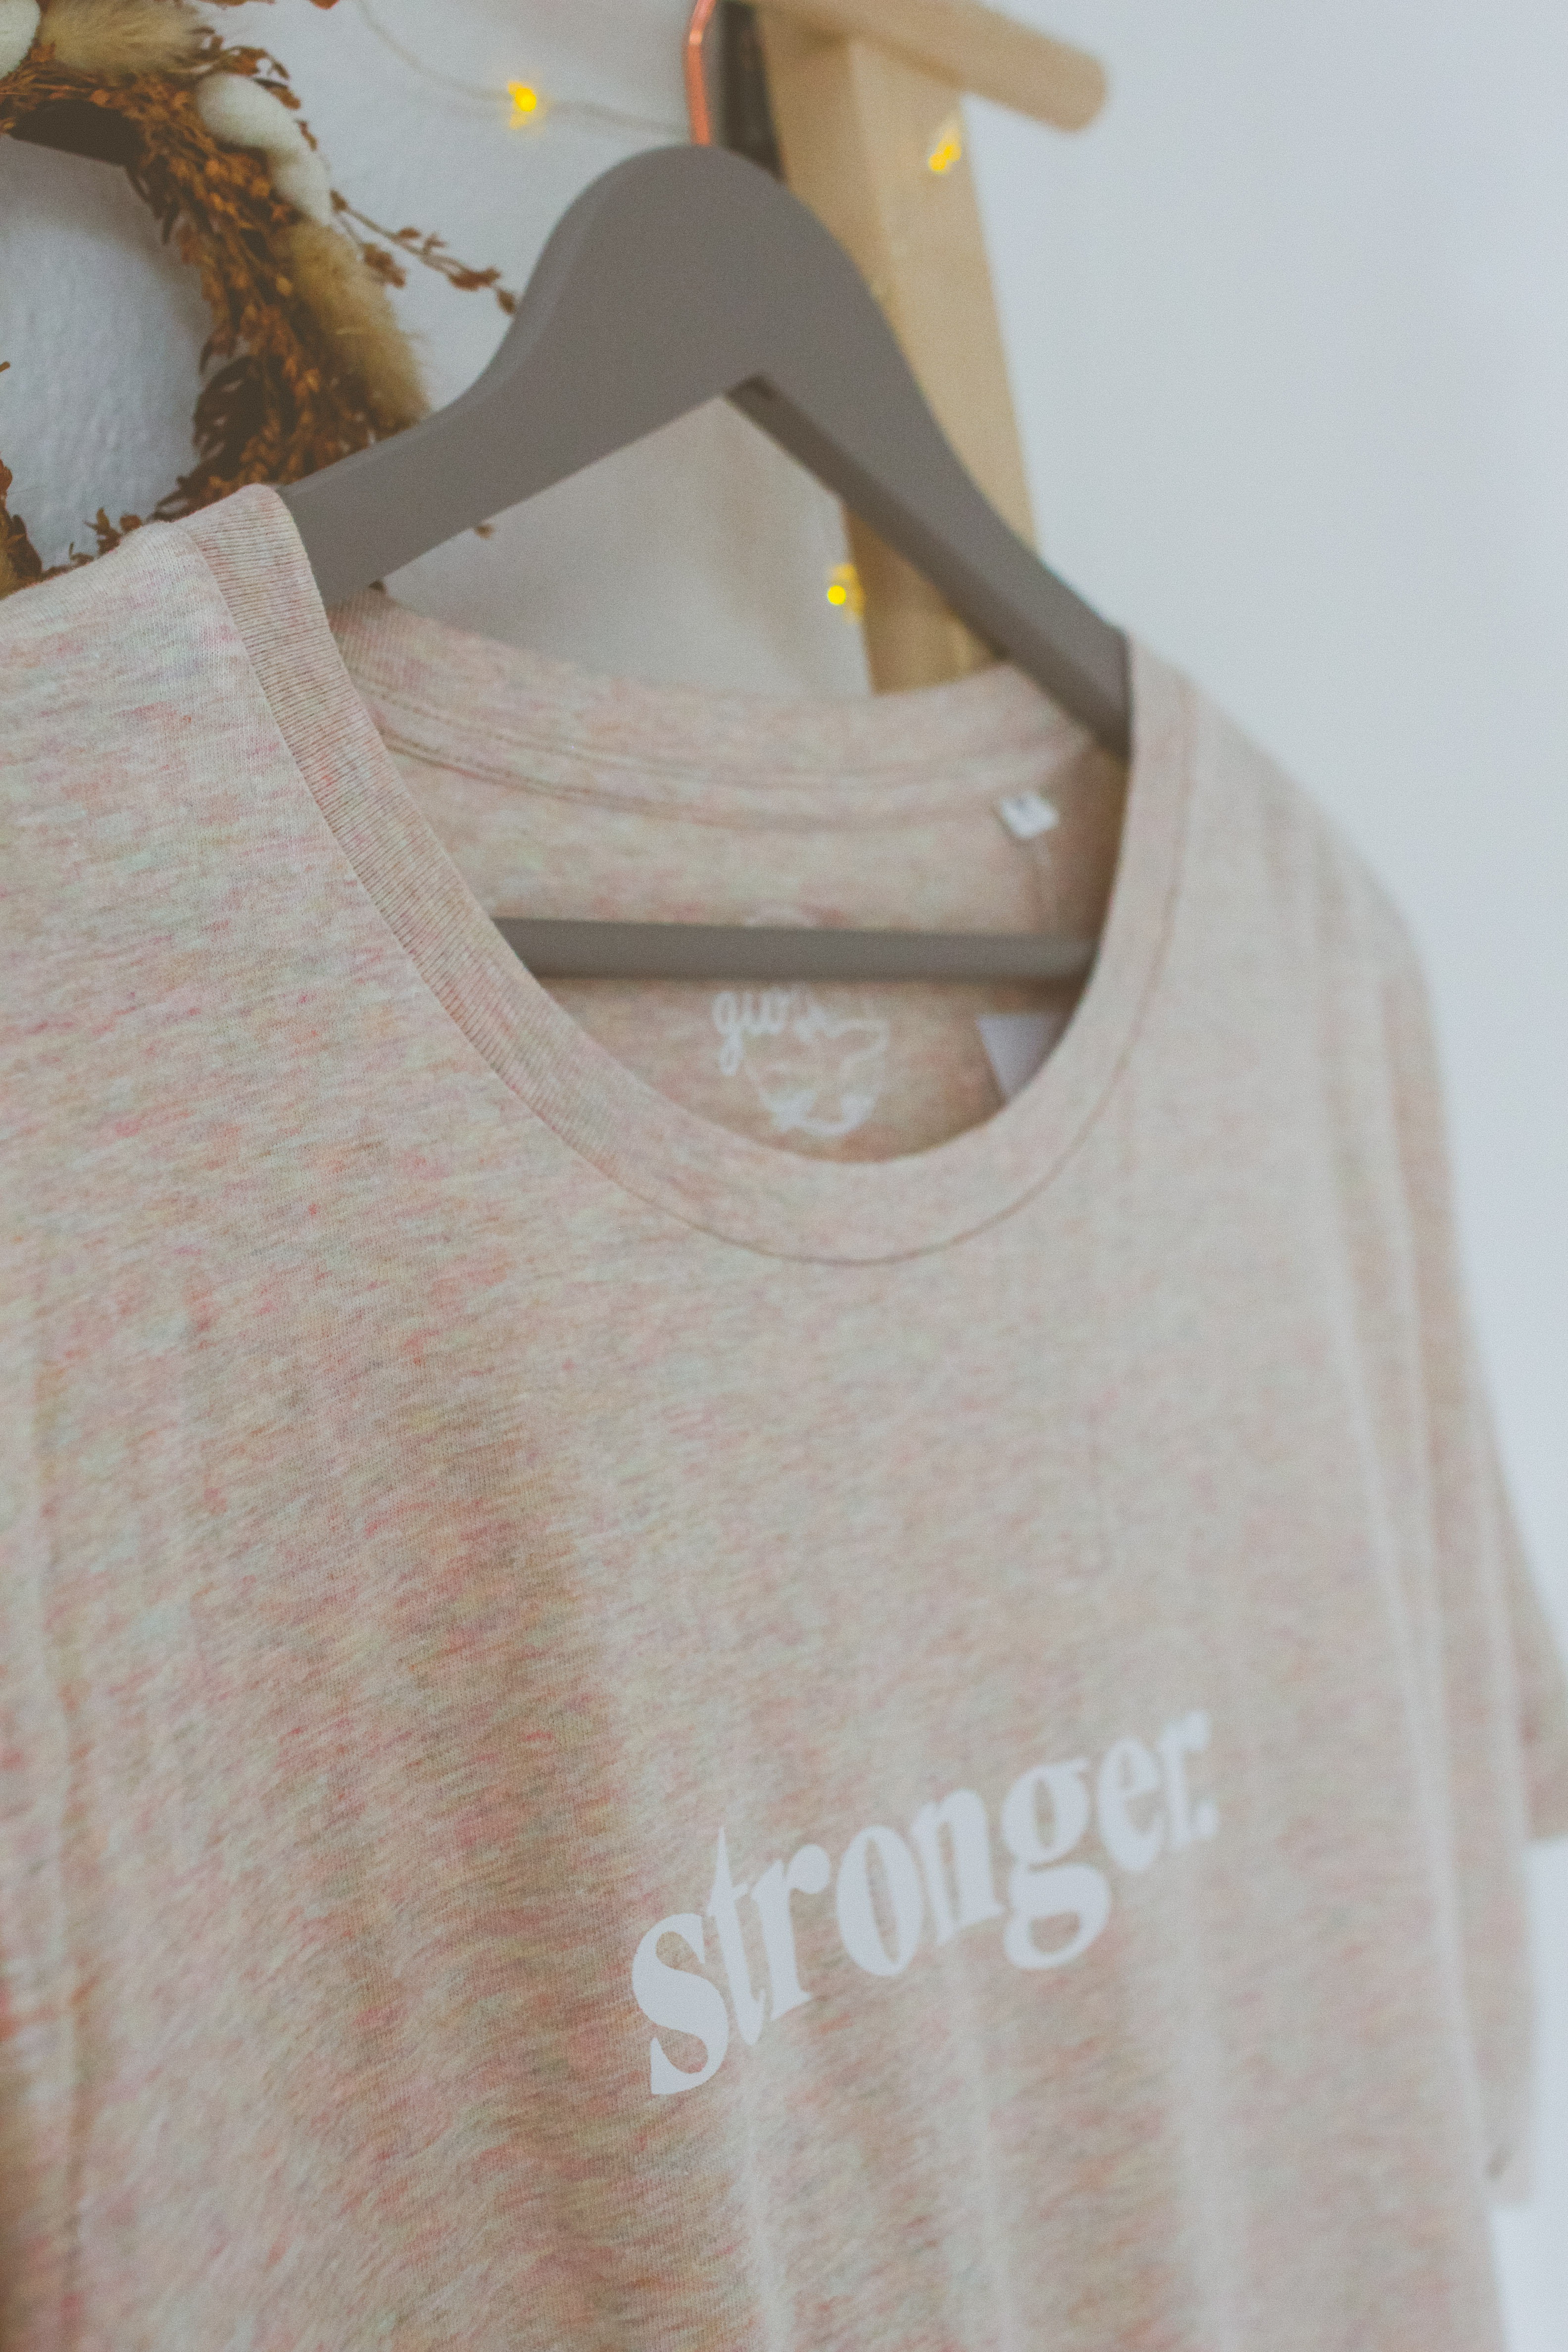 COLLIDER 'stronger' T-Shirt WOMEN